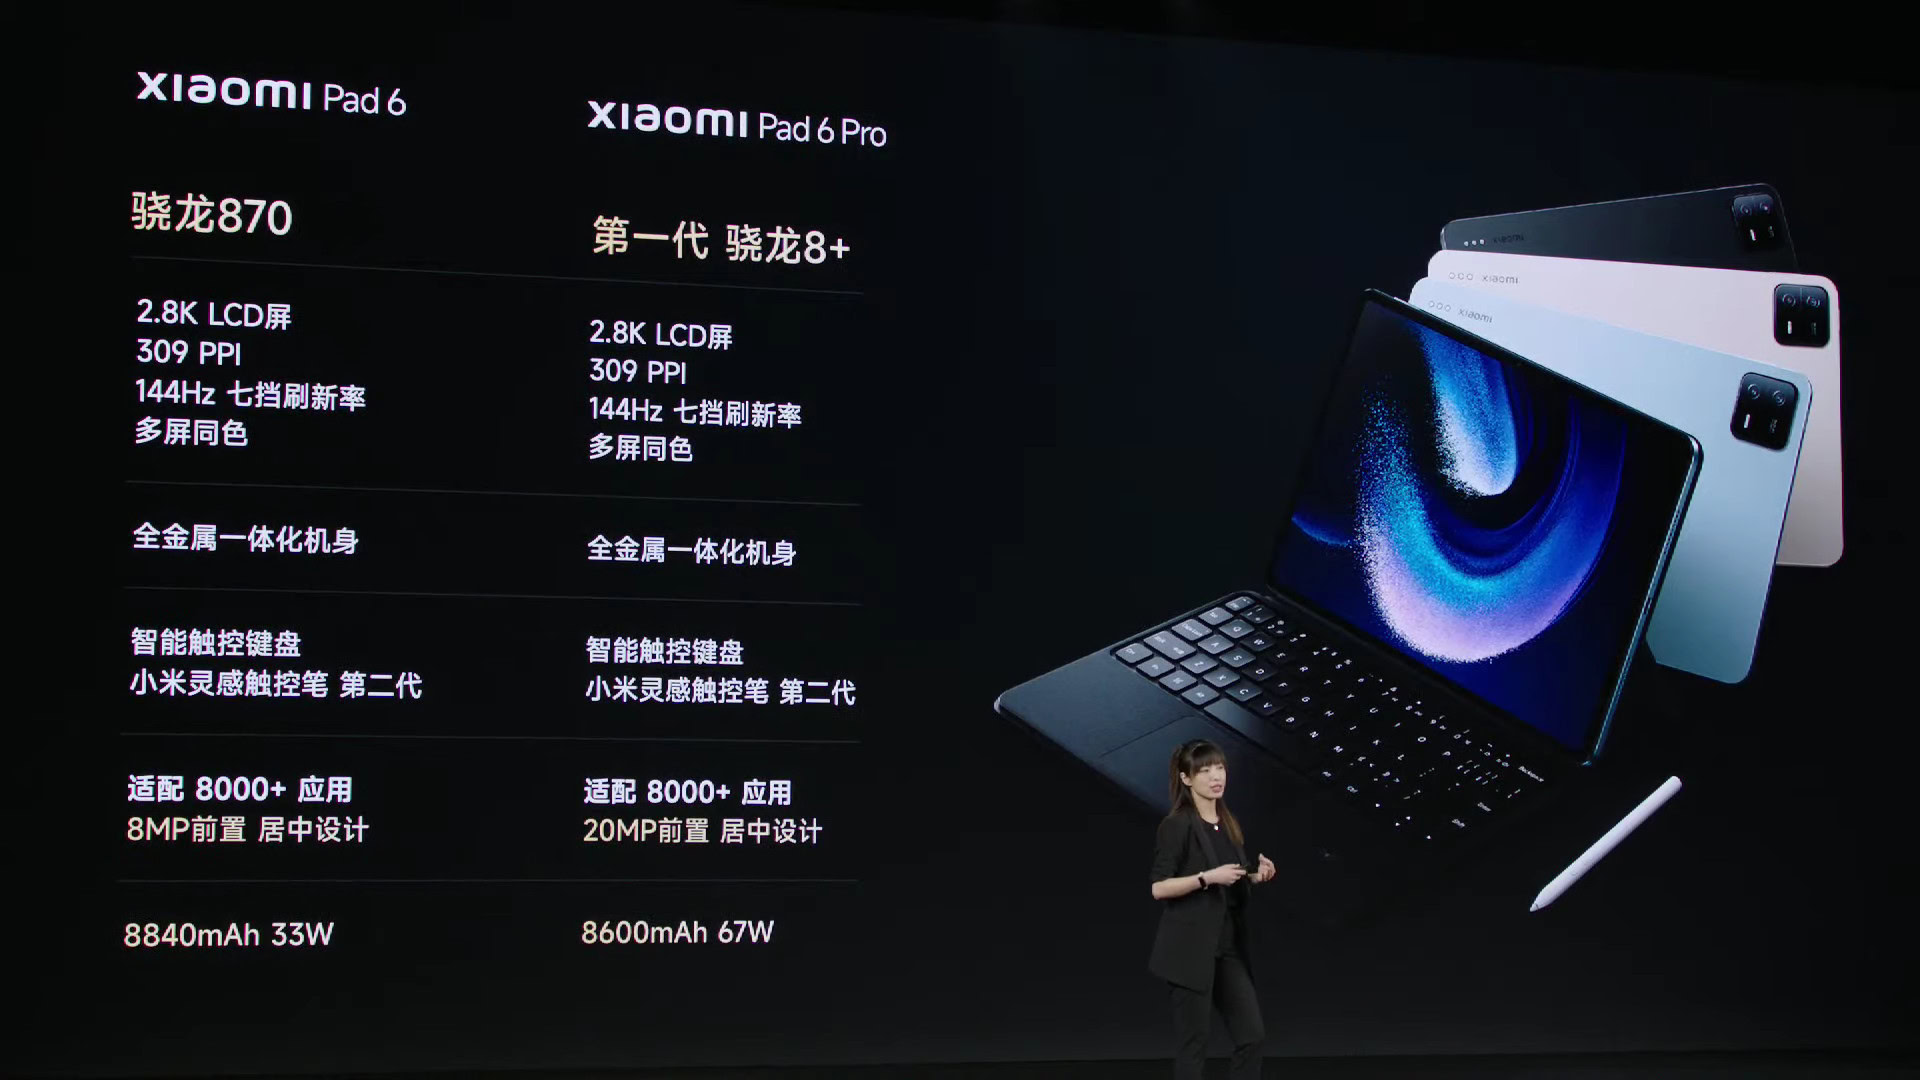 Xiaomi Pad 6: Especificaciones, características y precios - Tech Advisor